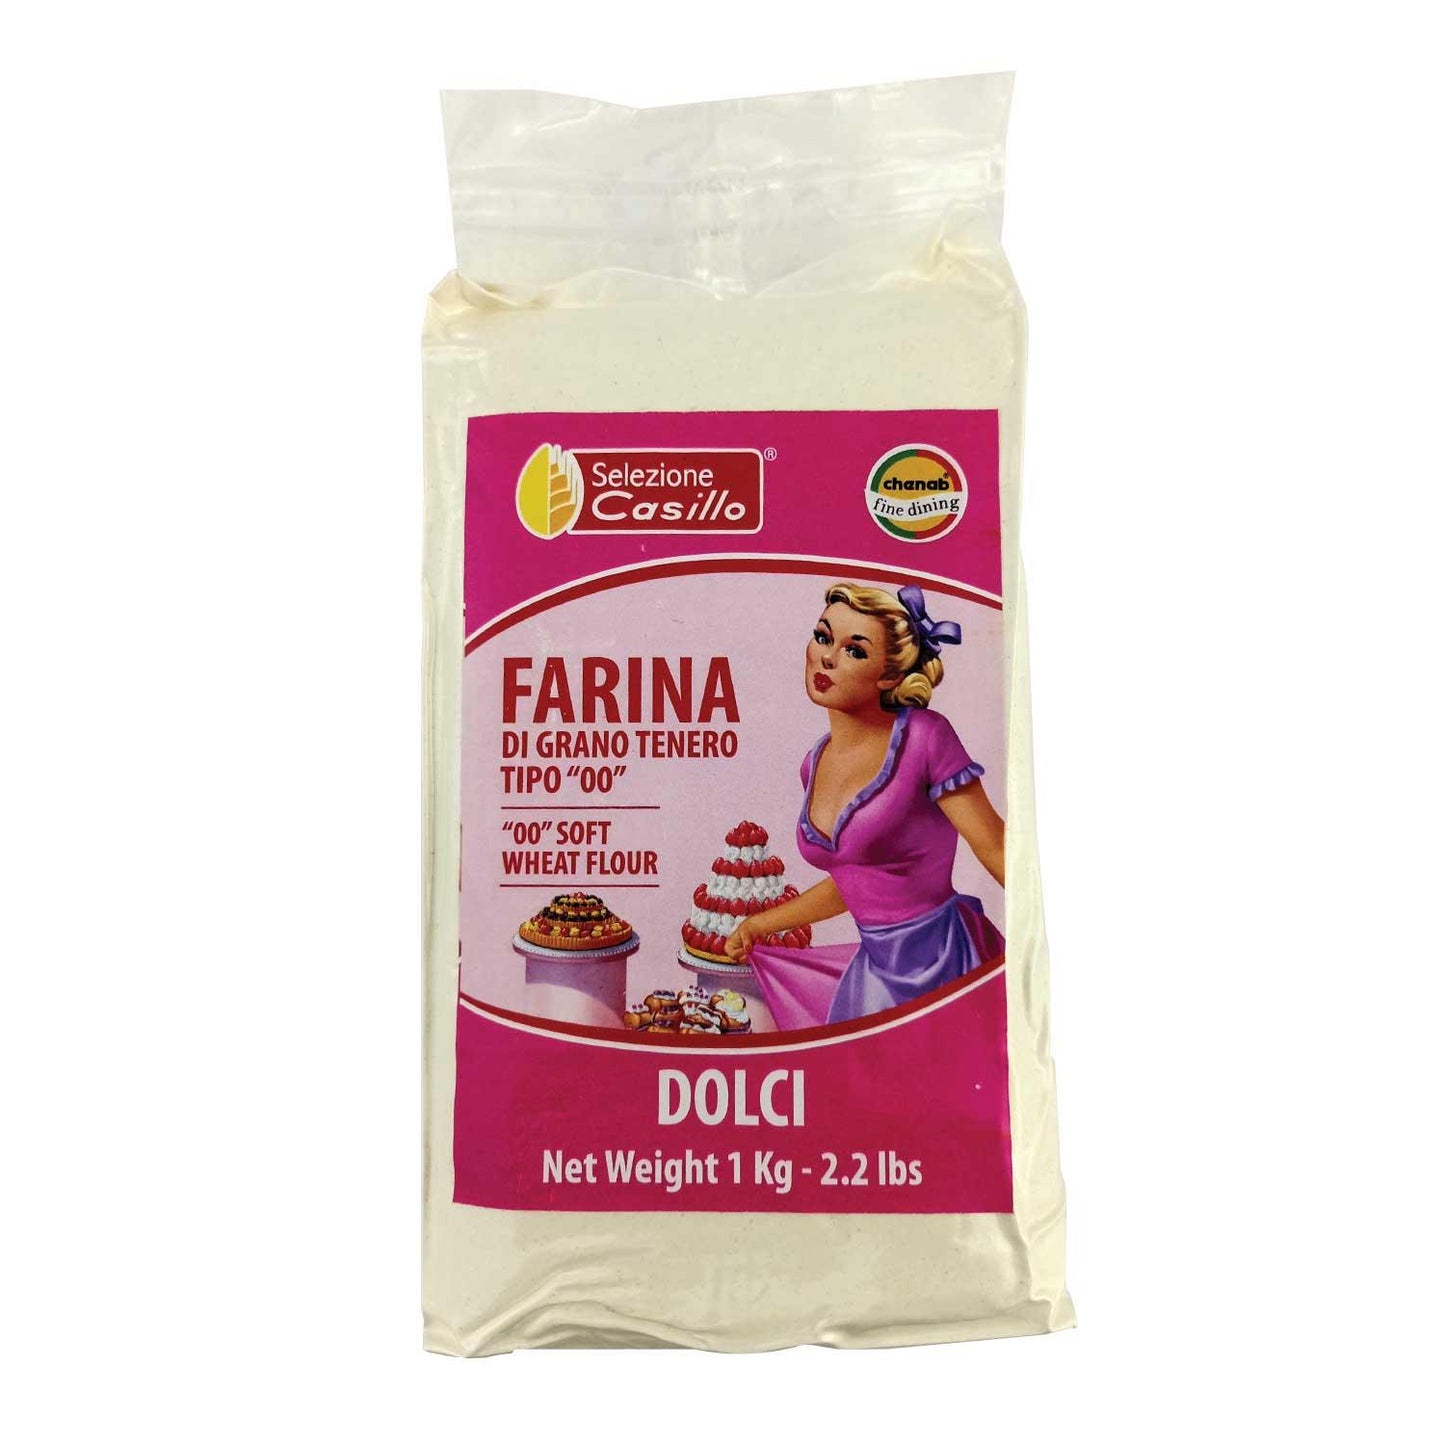 Selezione Casillo Farina 00 Soft Wheat Flour Dolci 1kg - reddotgreendot